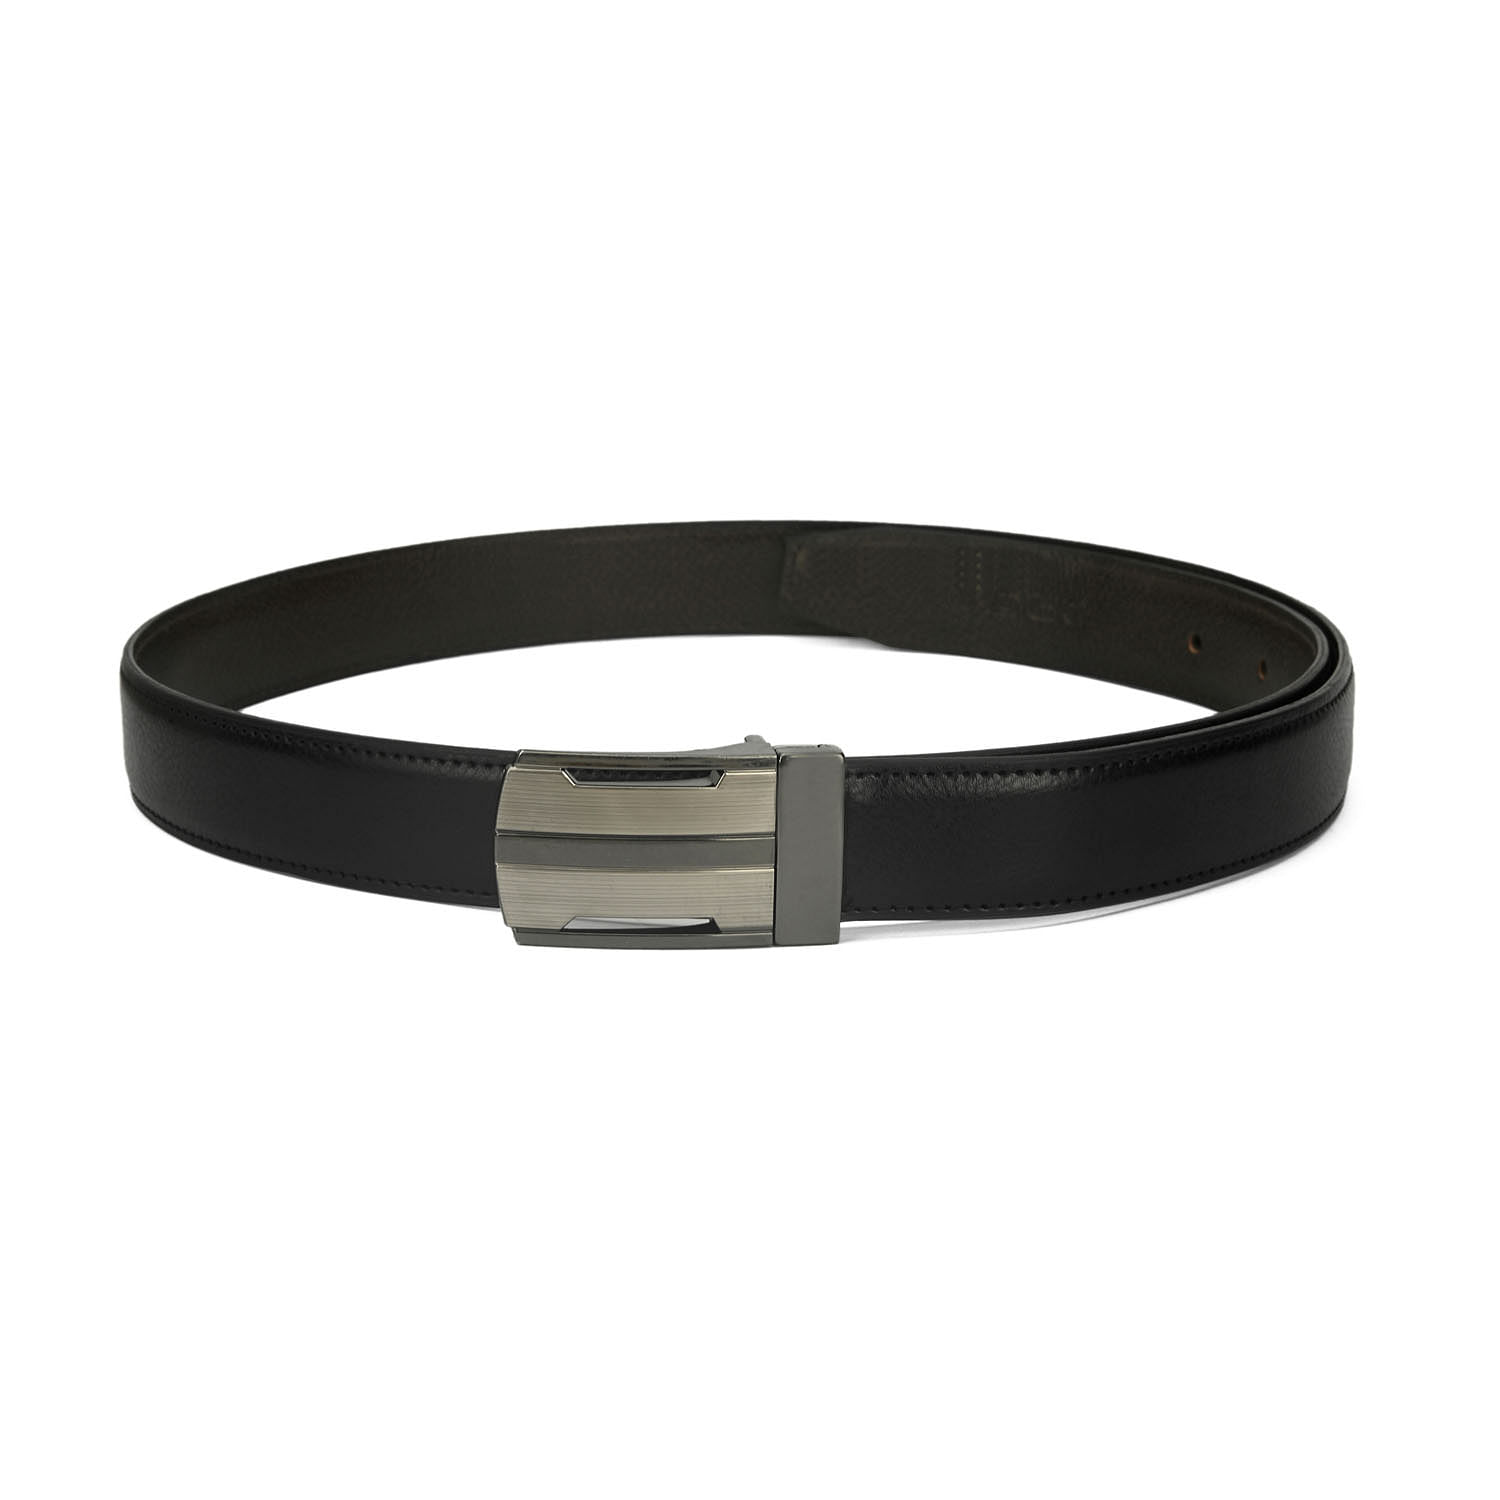 Men's Formal Belt with reversable Strap - FR-DB0010 - Black/Brown